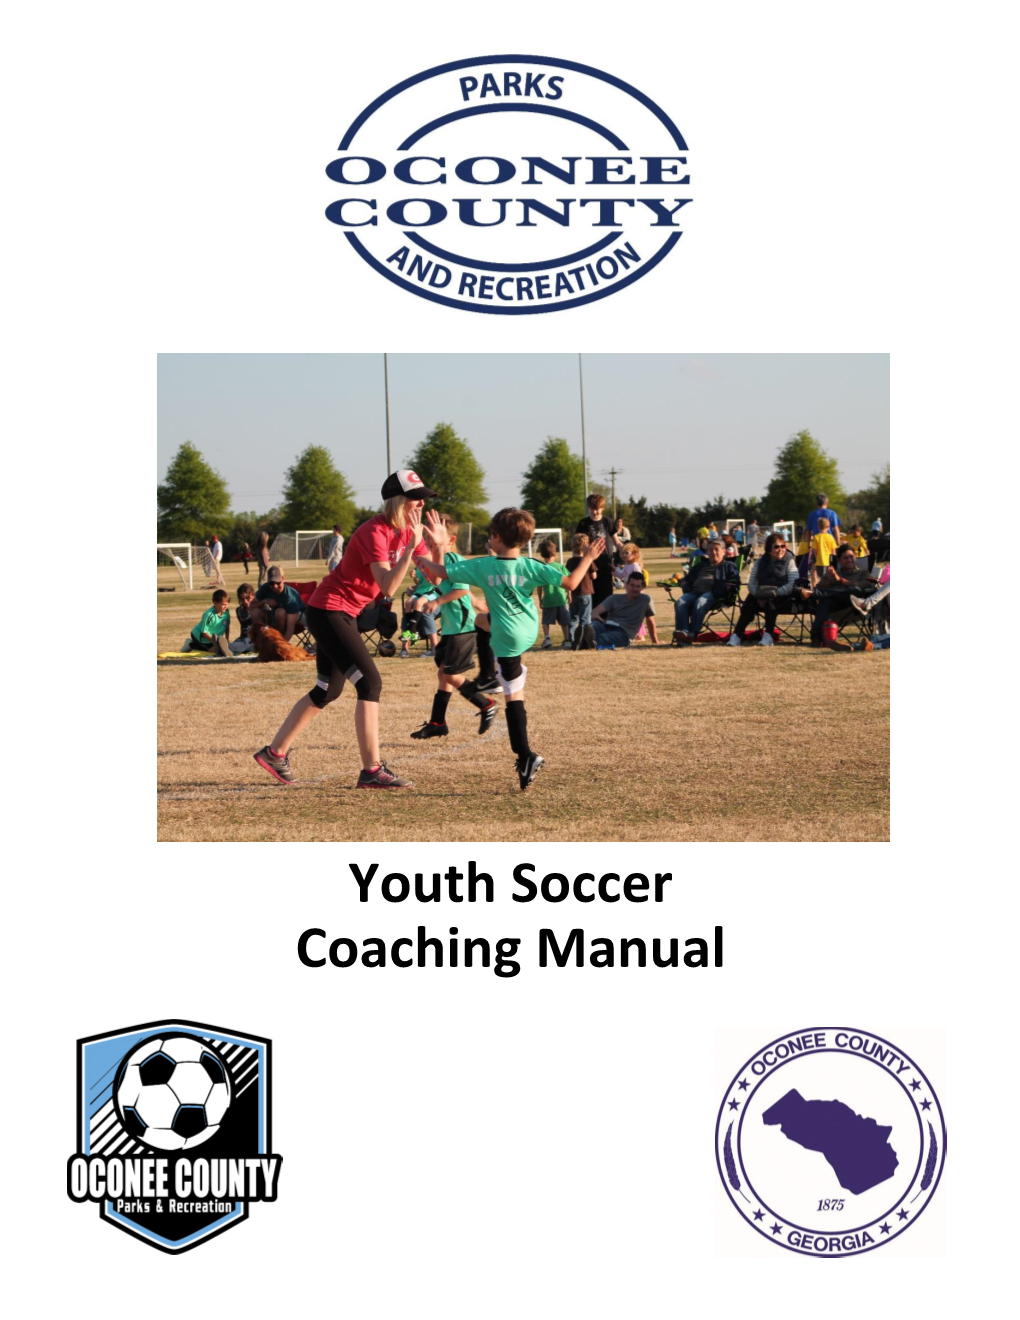 Youth Soccer Coaching Manual